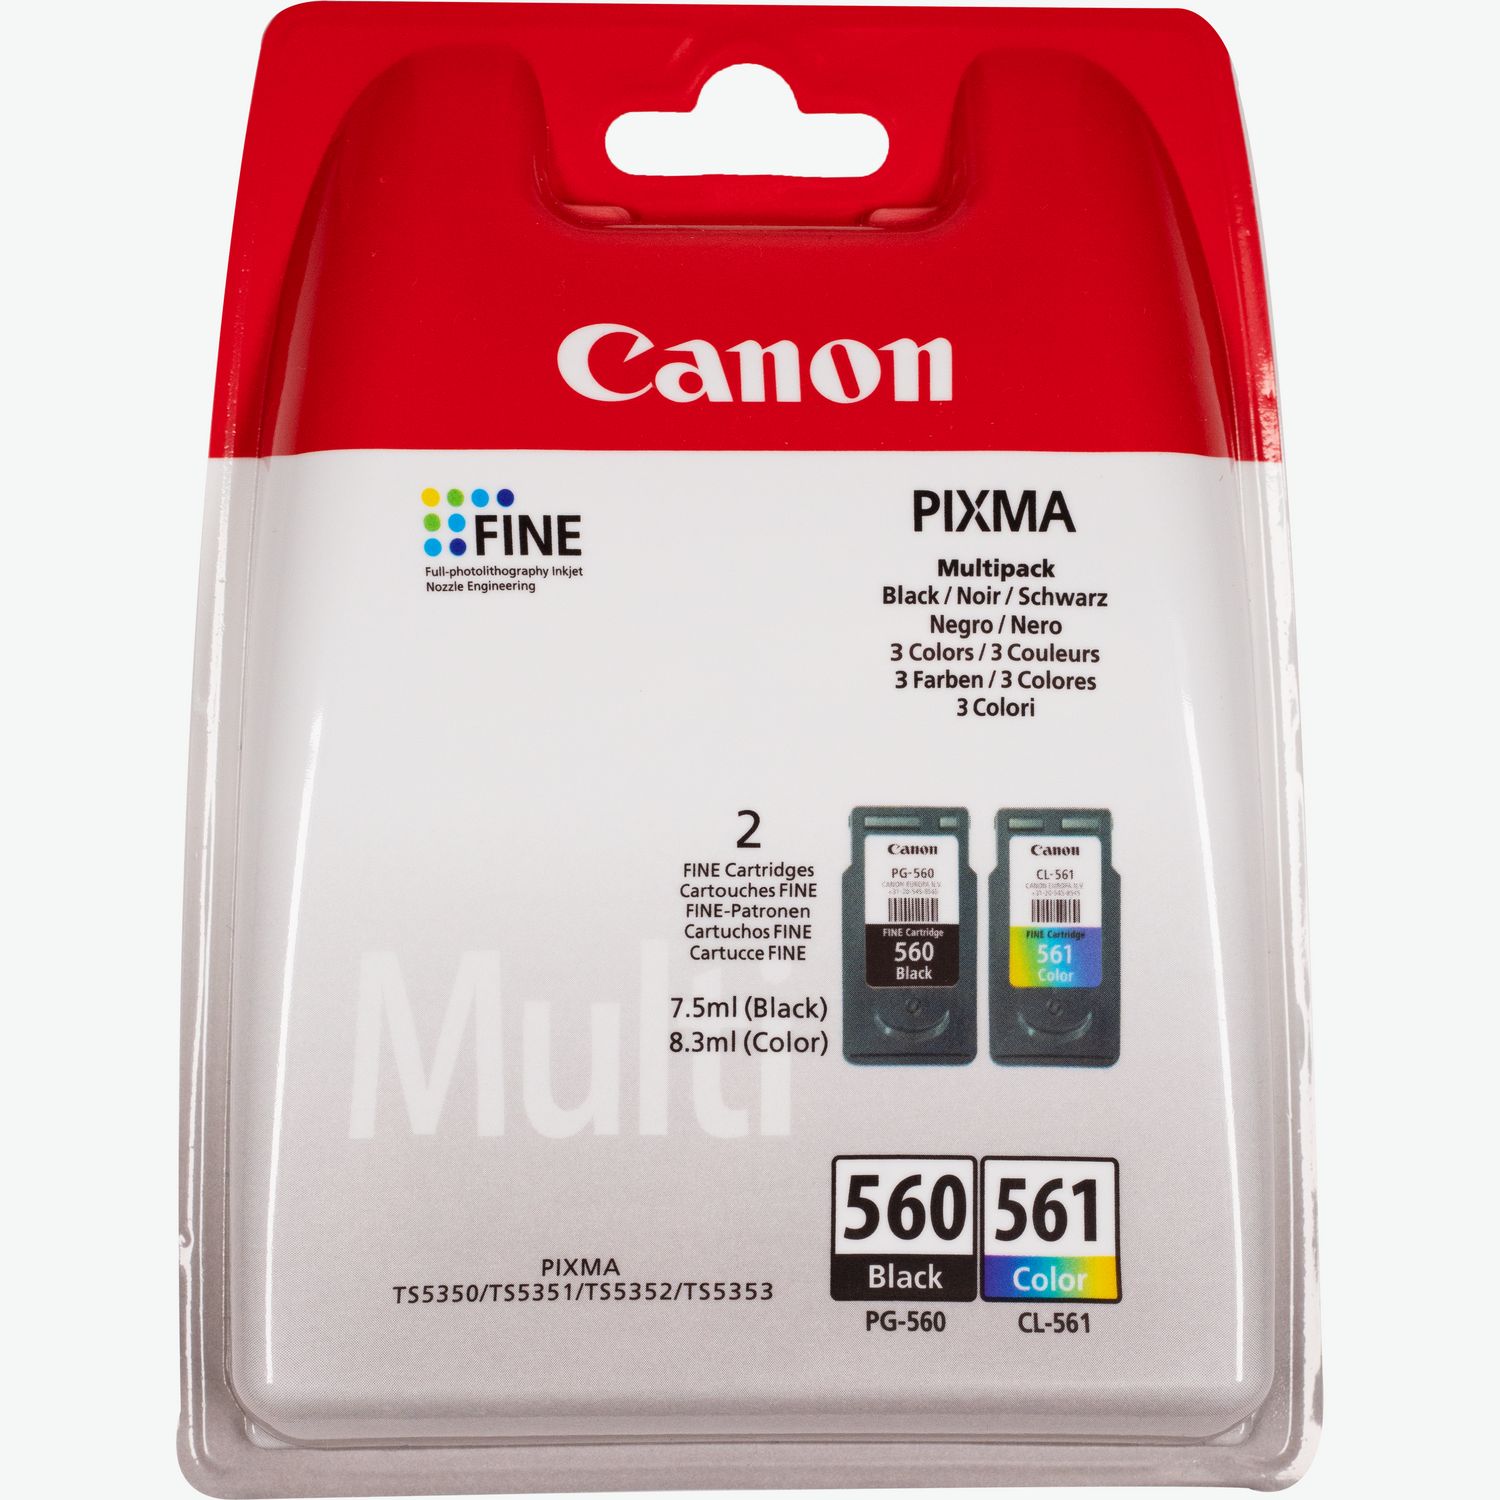 Canon PIXMA TS5350a Noir - Imprimante multifonction - Garantie 3